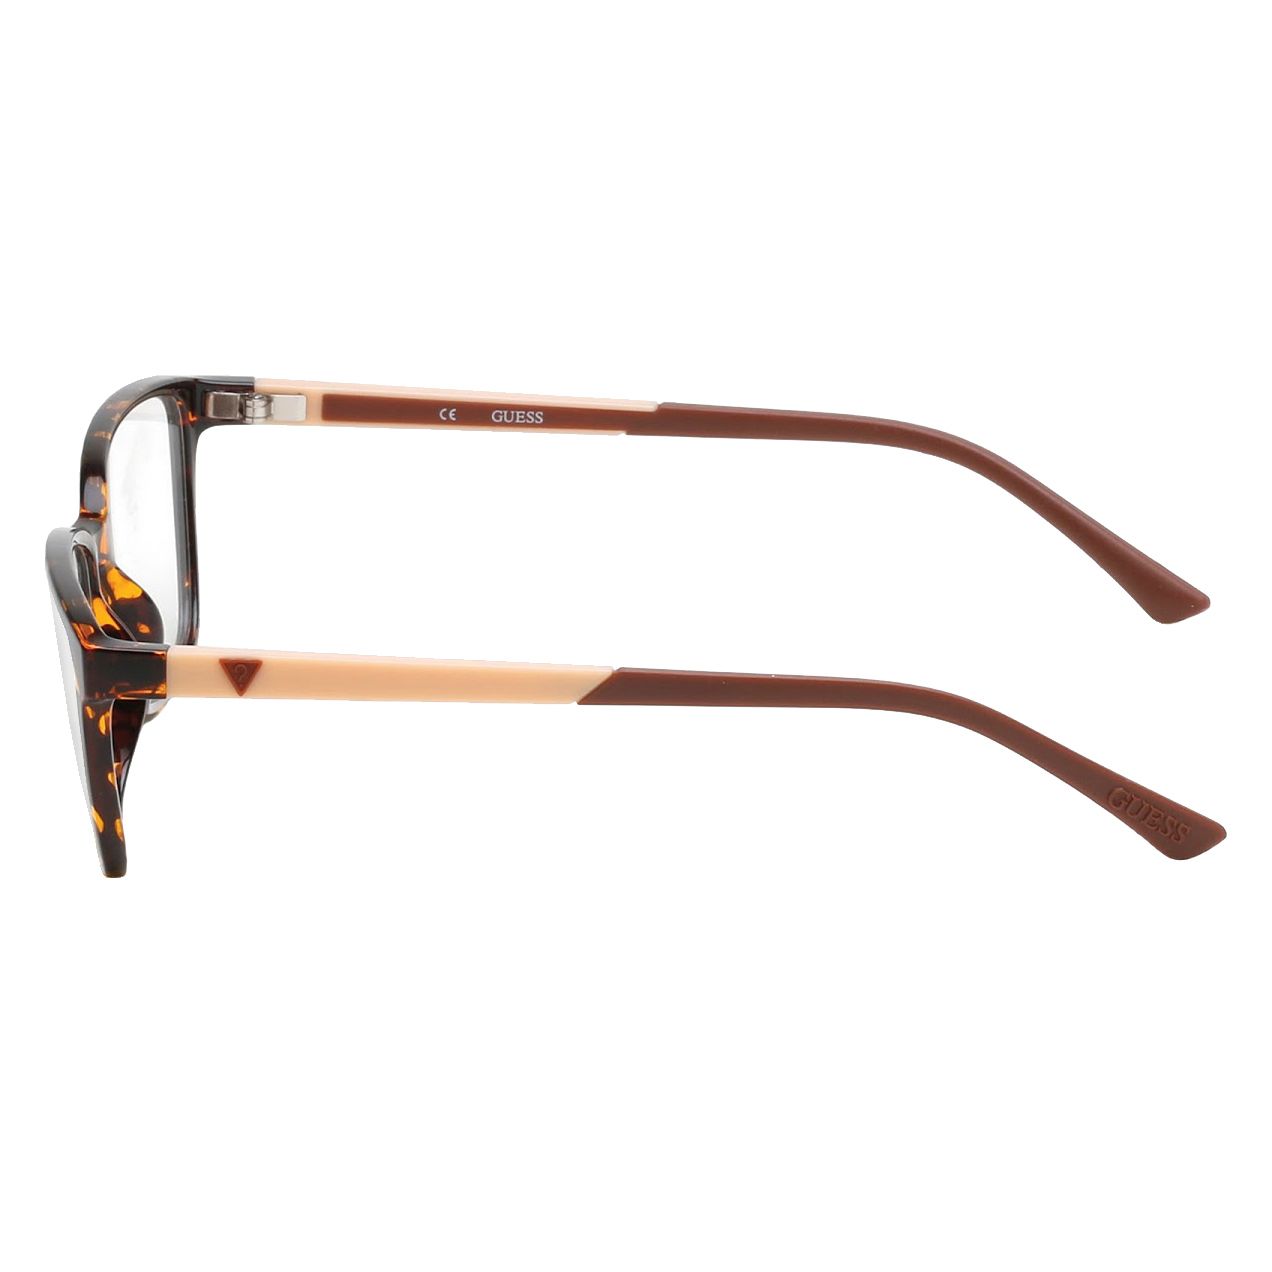 فریم عینک طبی زنانه گس مدل GU249605254 -  - 4